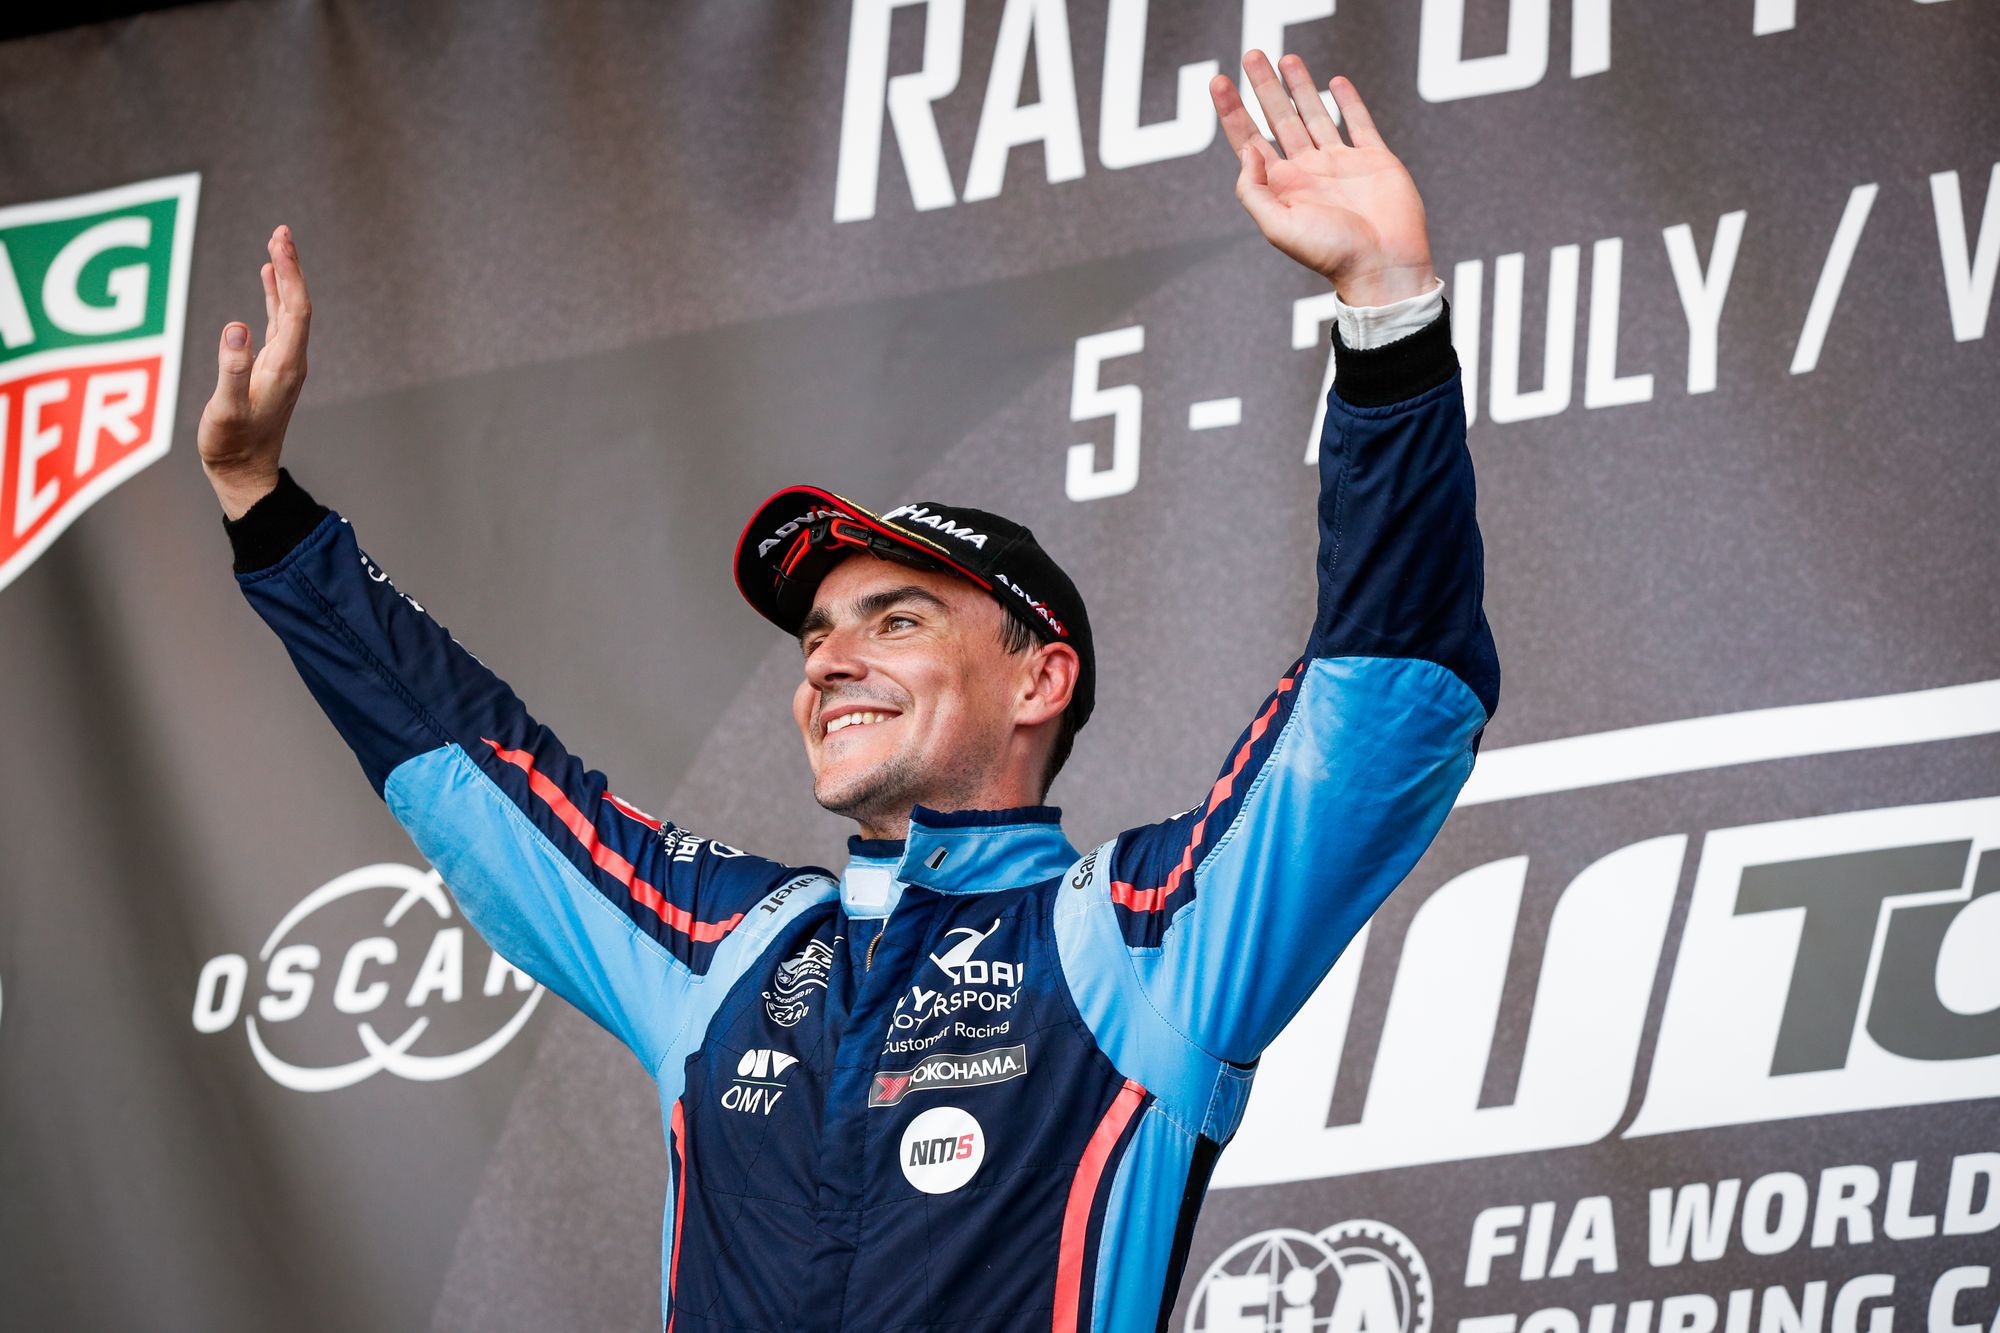 Michelisz Norbert 2019-ben megnyerte a túraautó-Vk-sorozatot